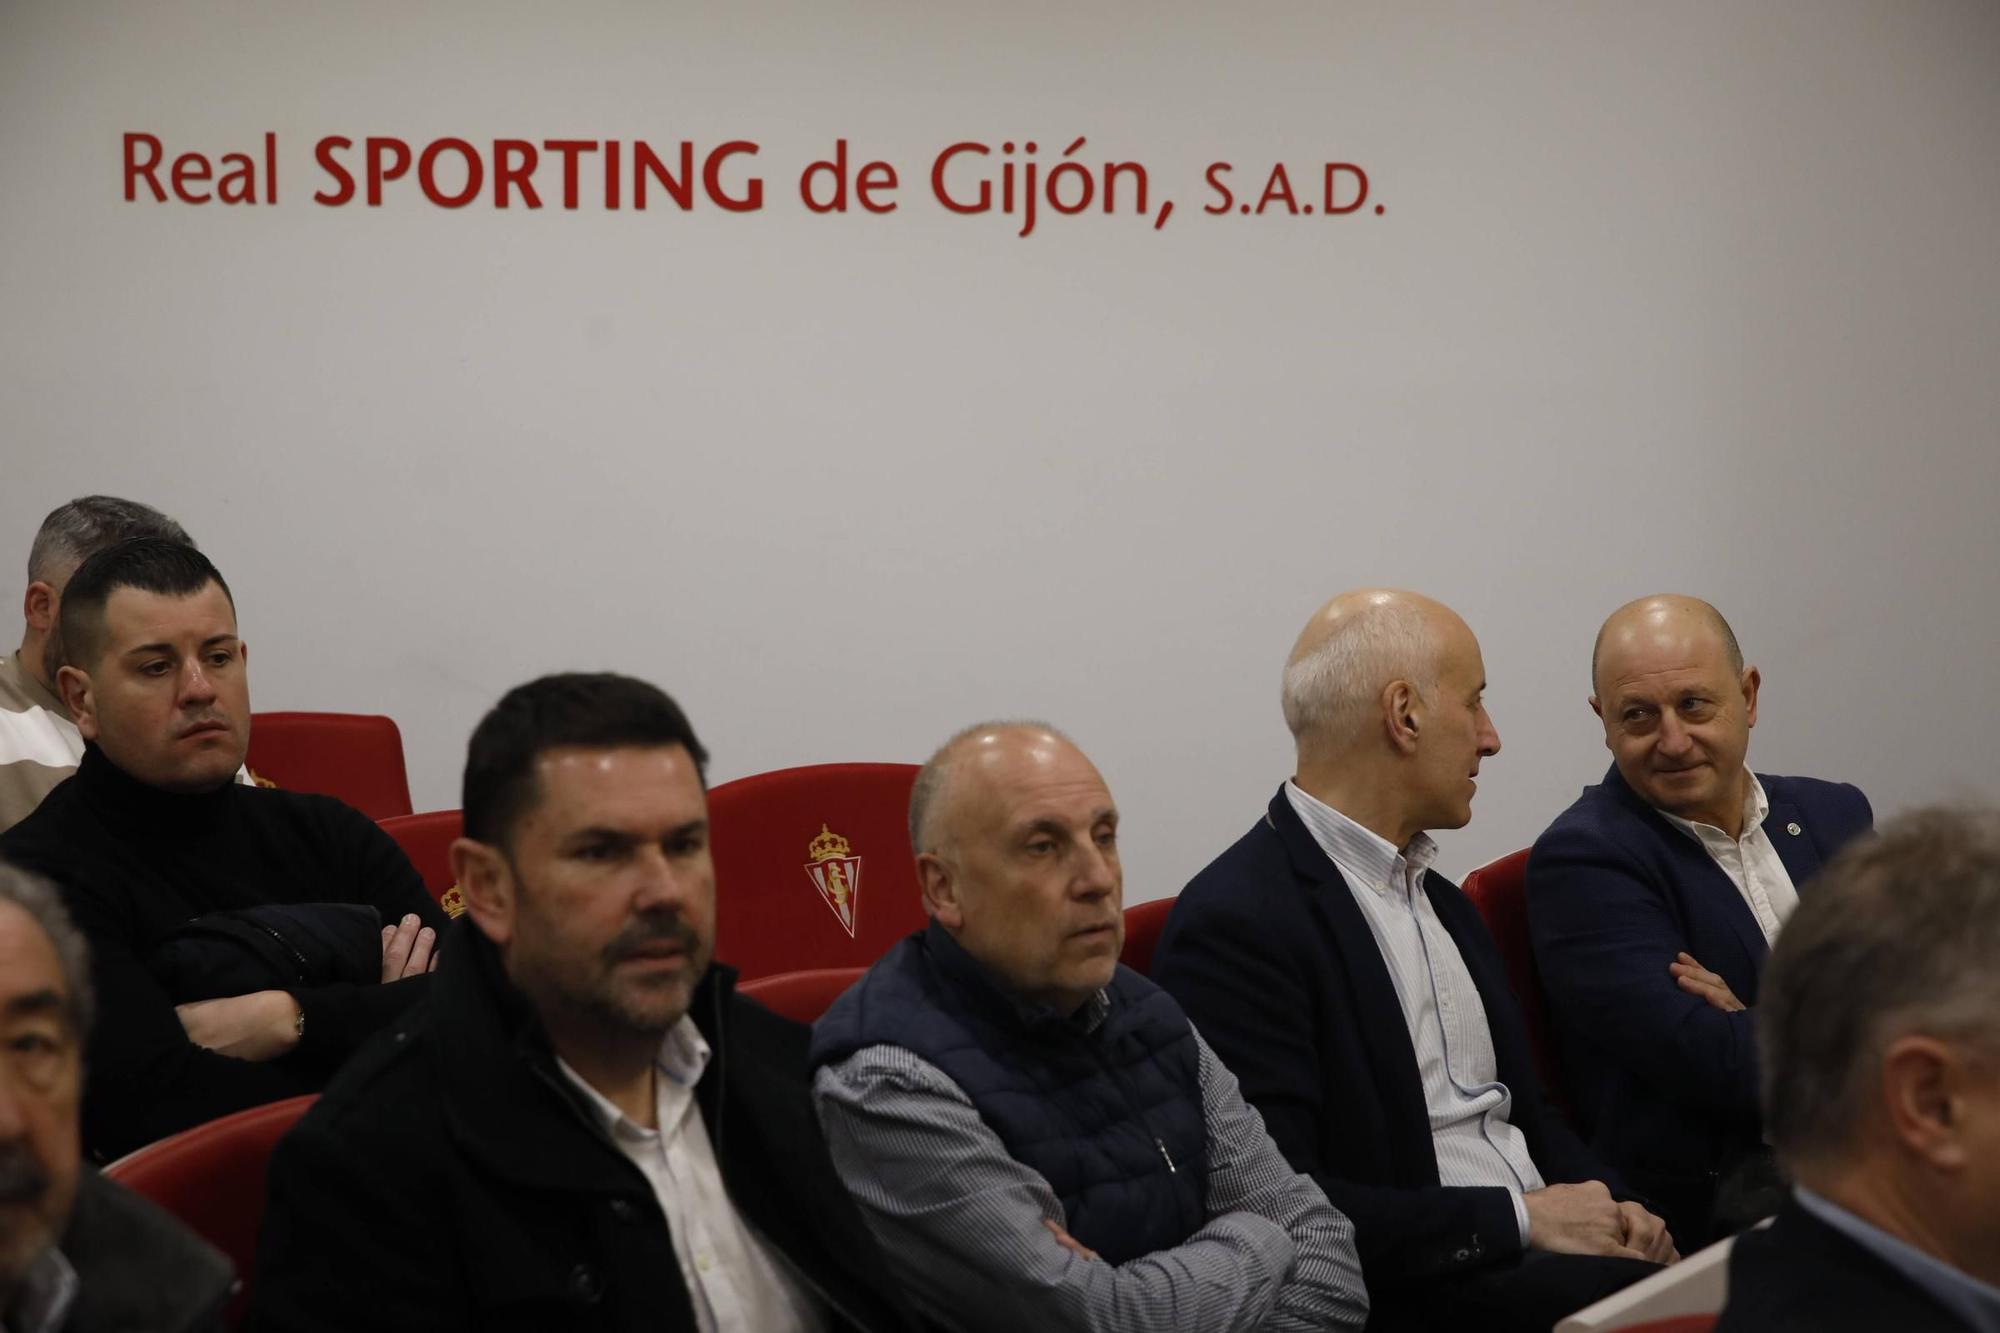 Así será el nuevo Molinón: el Sporting presenta el proyecto (en imágenes)